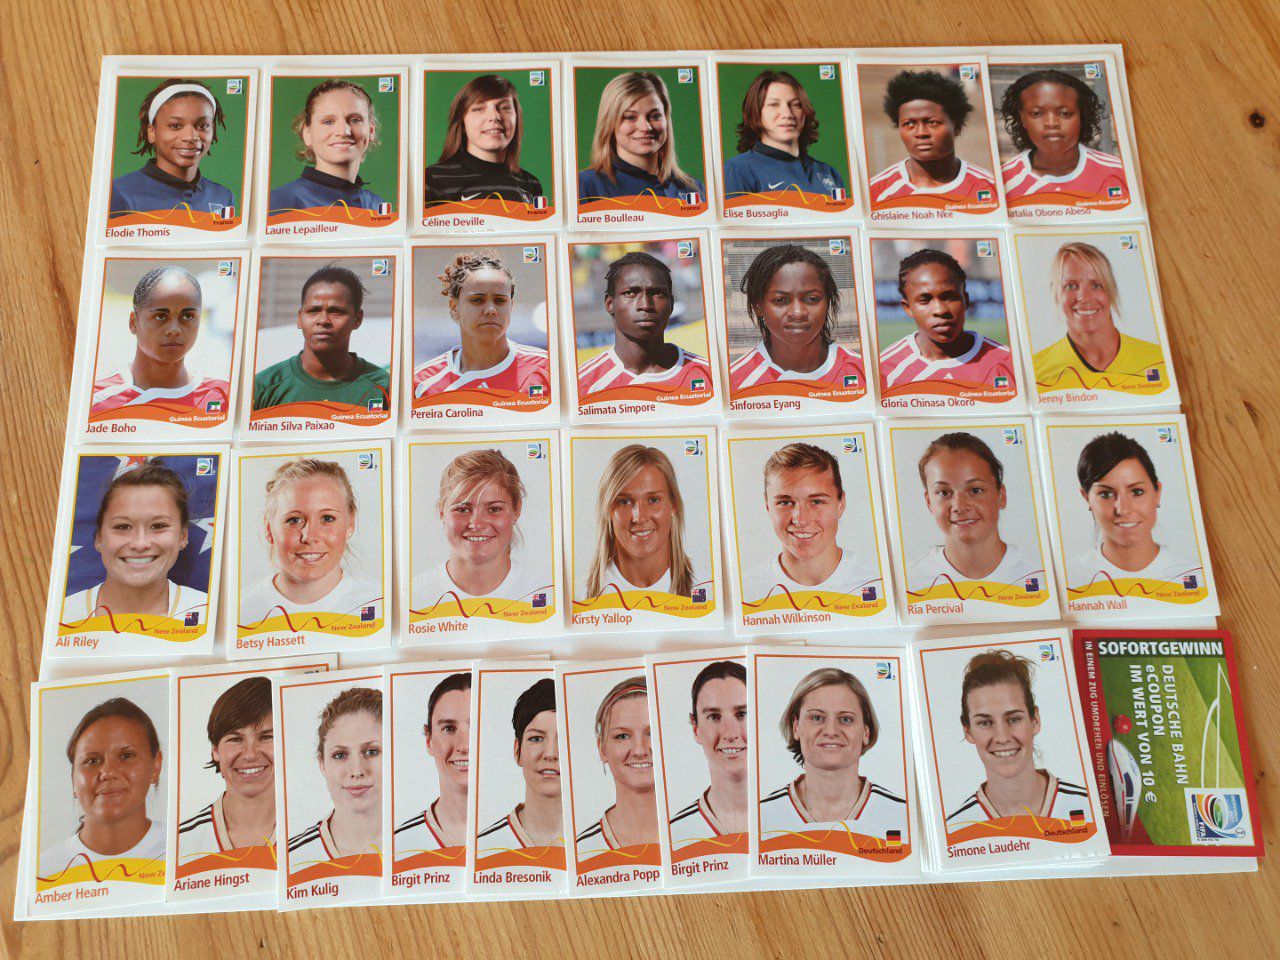 Spécial Rewe sticker Germany women 2011